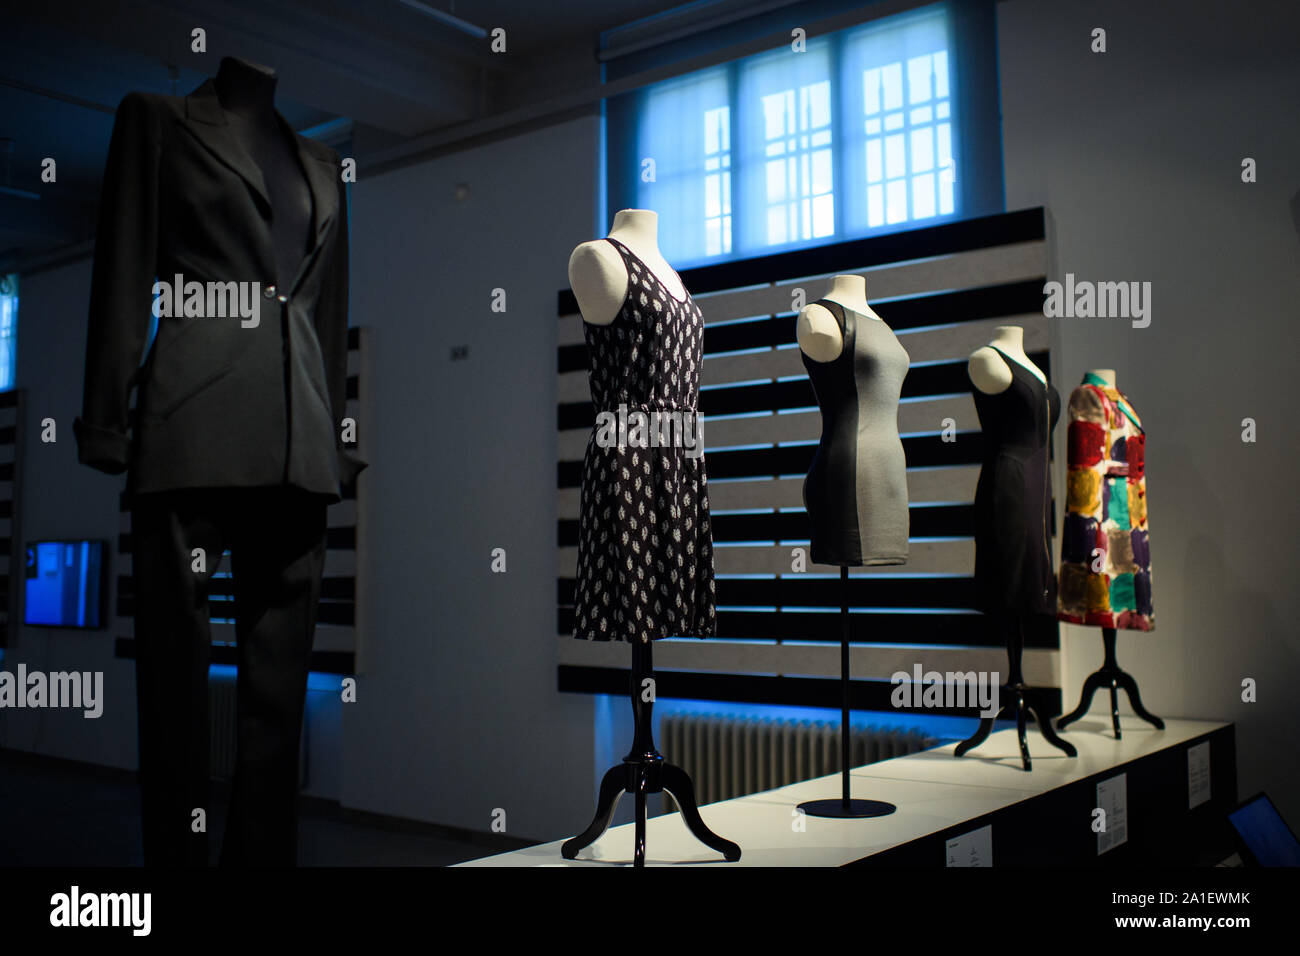 Berlino, Germania. 26 Sep, 2019. I vestiti sono disponibili nella zona di  ingresso della mostra speciale "fast fashion. I lati oscuri della moda" nel  Museo delle culture europee. La mostra si occupa